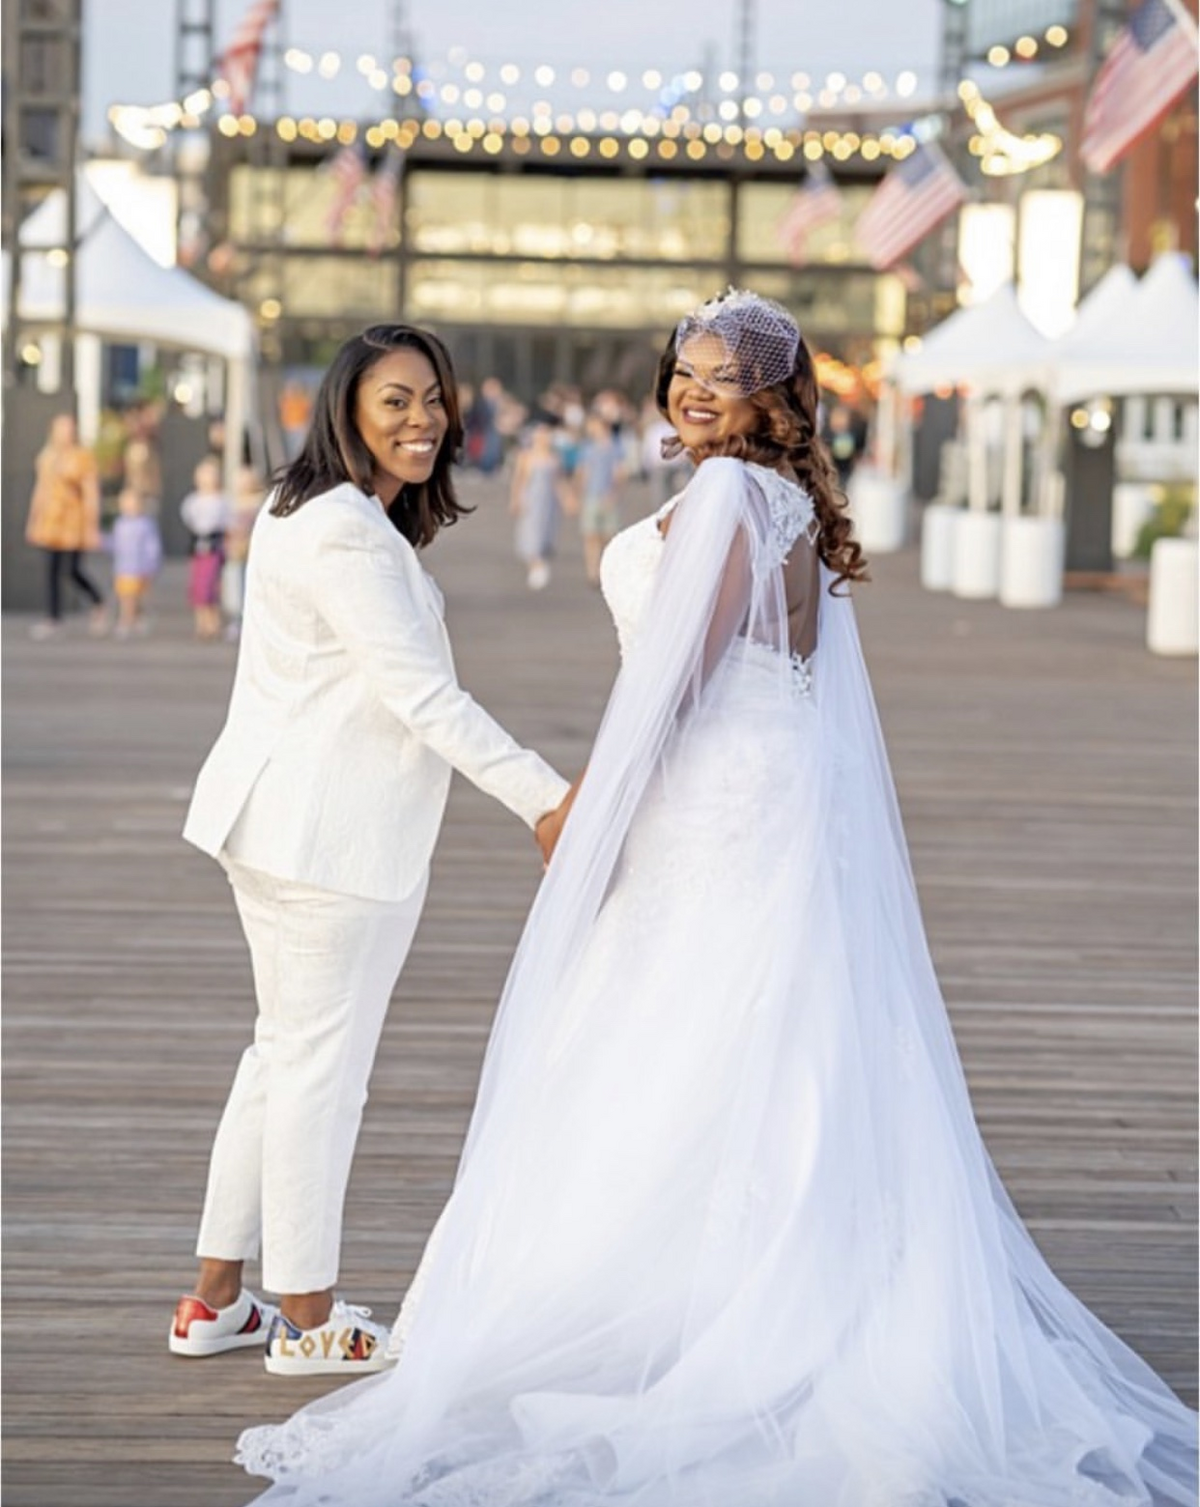 african-american-wedding-washington-dc-dmv-wharf-lgbt-joli-events-gallery